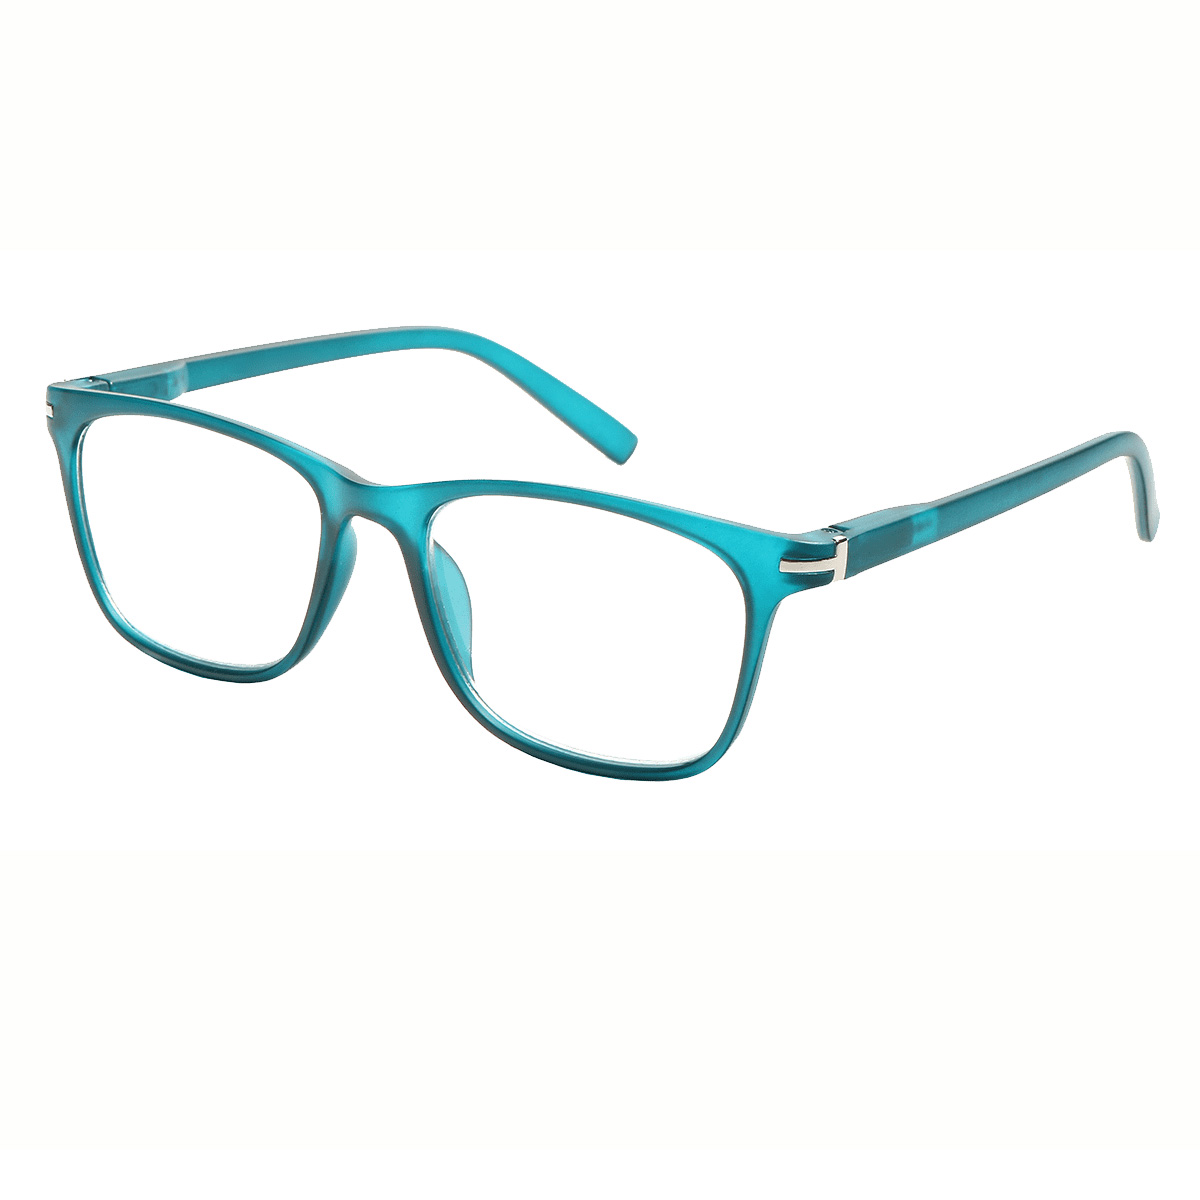 Solo - Rectangle Green Reading Glasses for Men & Women